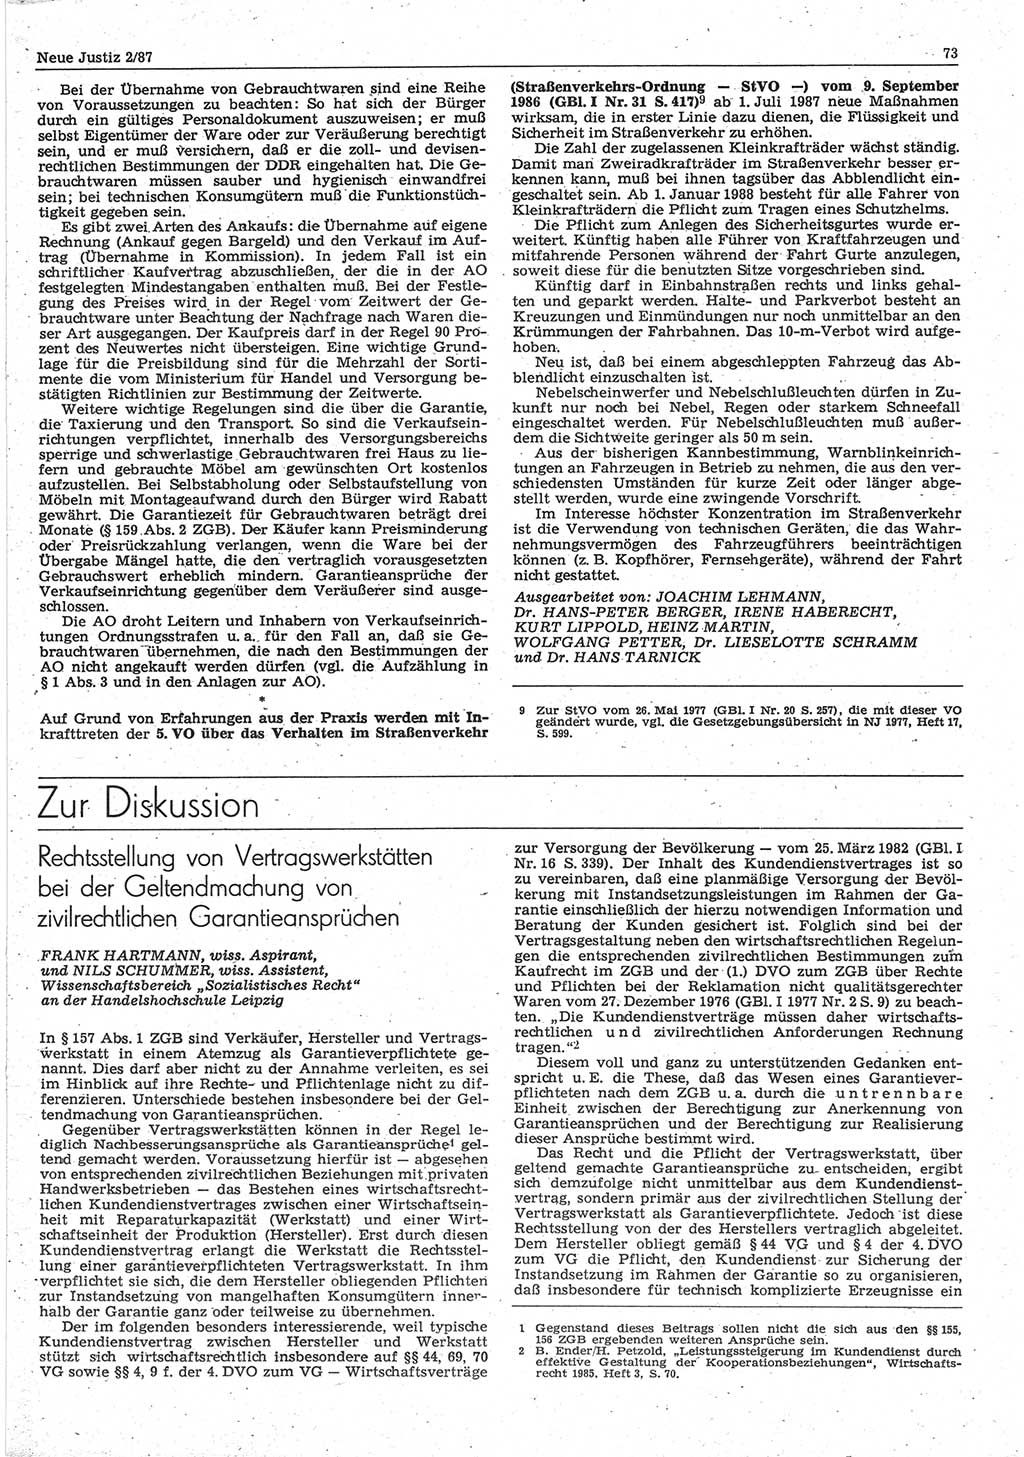 Neue Justiz (NJ), Zeitschrift für sozialistisches Recht und Gesetzlichkeit [Deutsche Demokratische Republik (DDR)], 41. Jahrgang 1987, Seite 73 (NJ DDR 1987, S. 73)